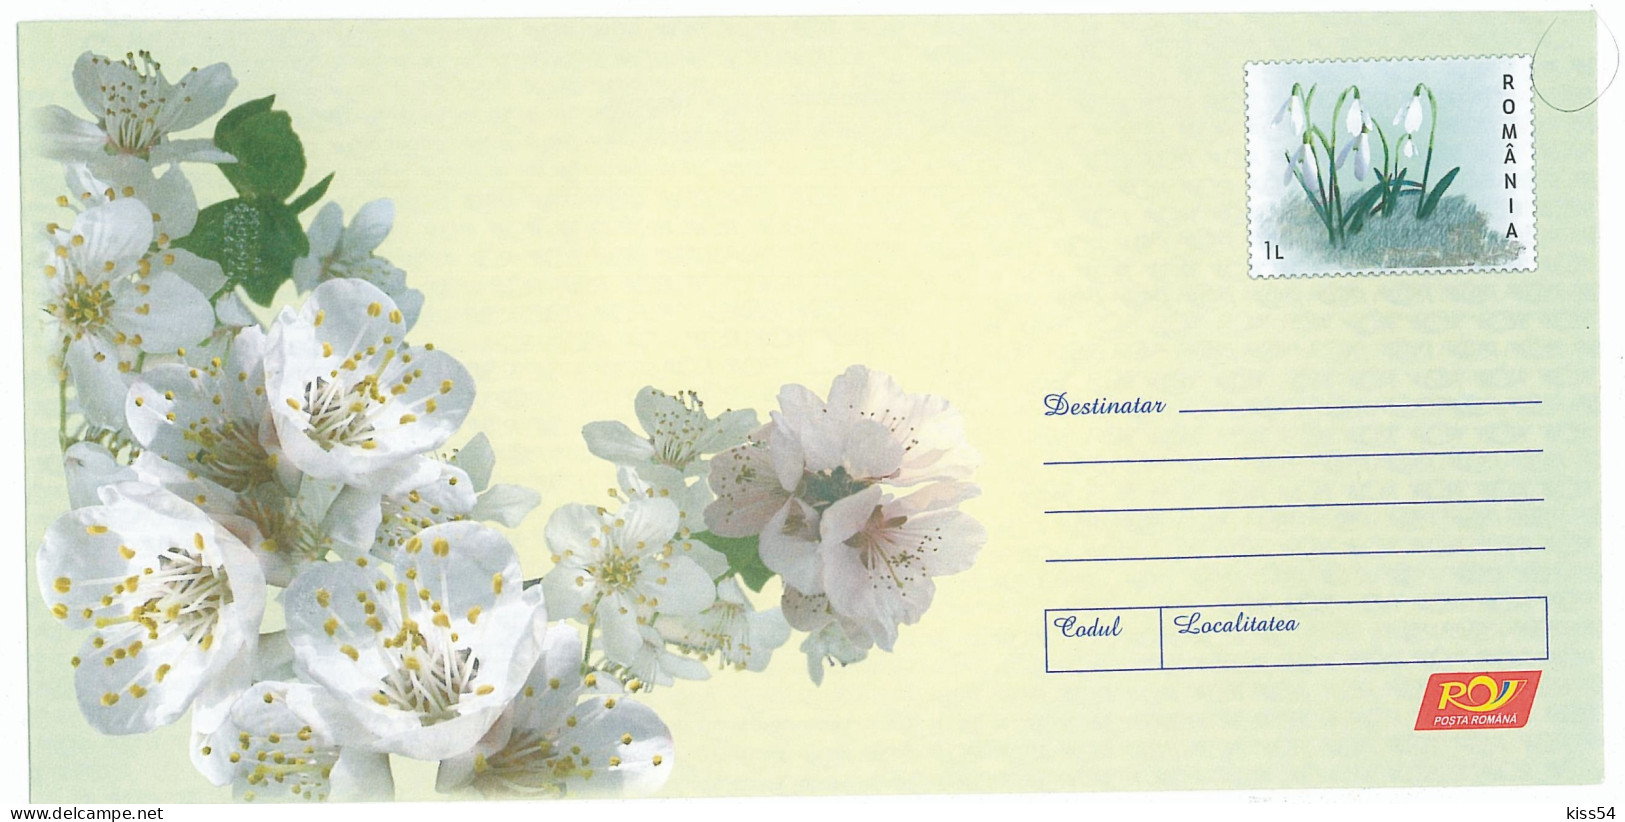 IP 2009 - 9 Flowers Of Apple And Lamb - Stationery - Unused - 2009 - Postal Stationery